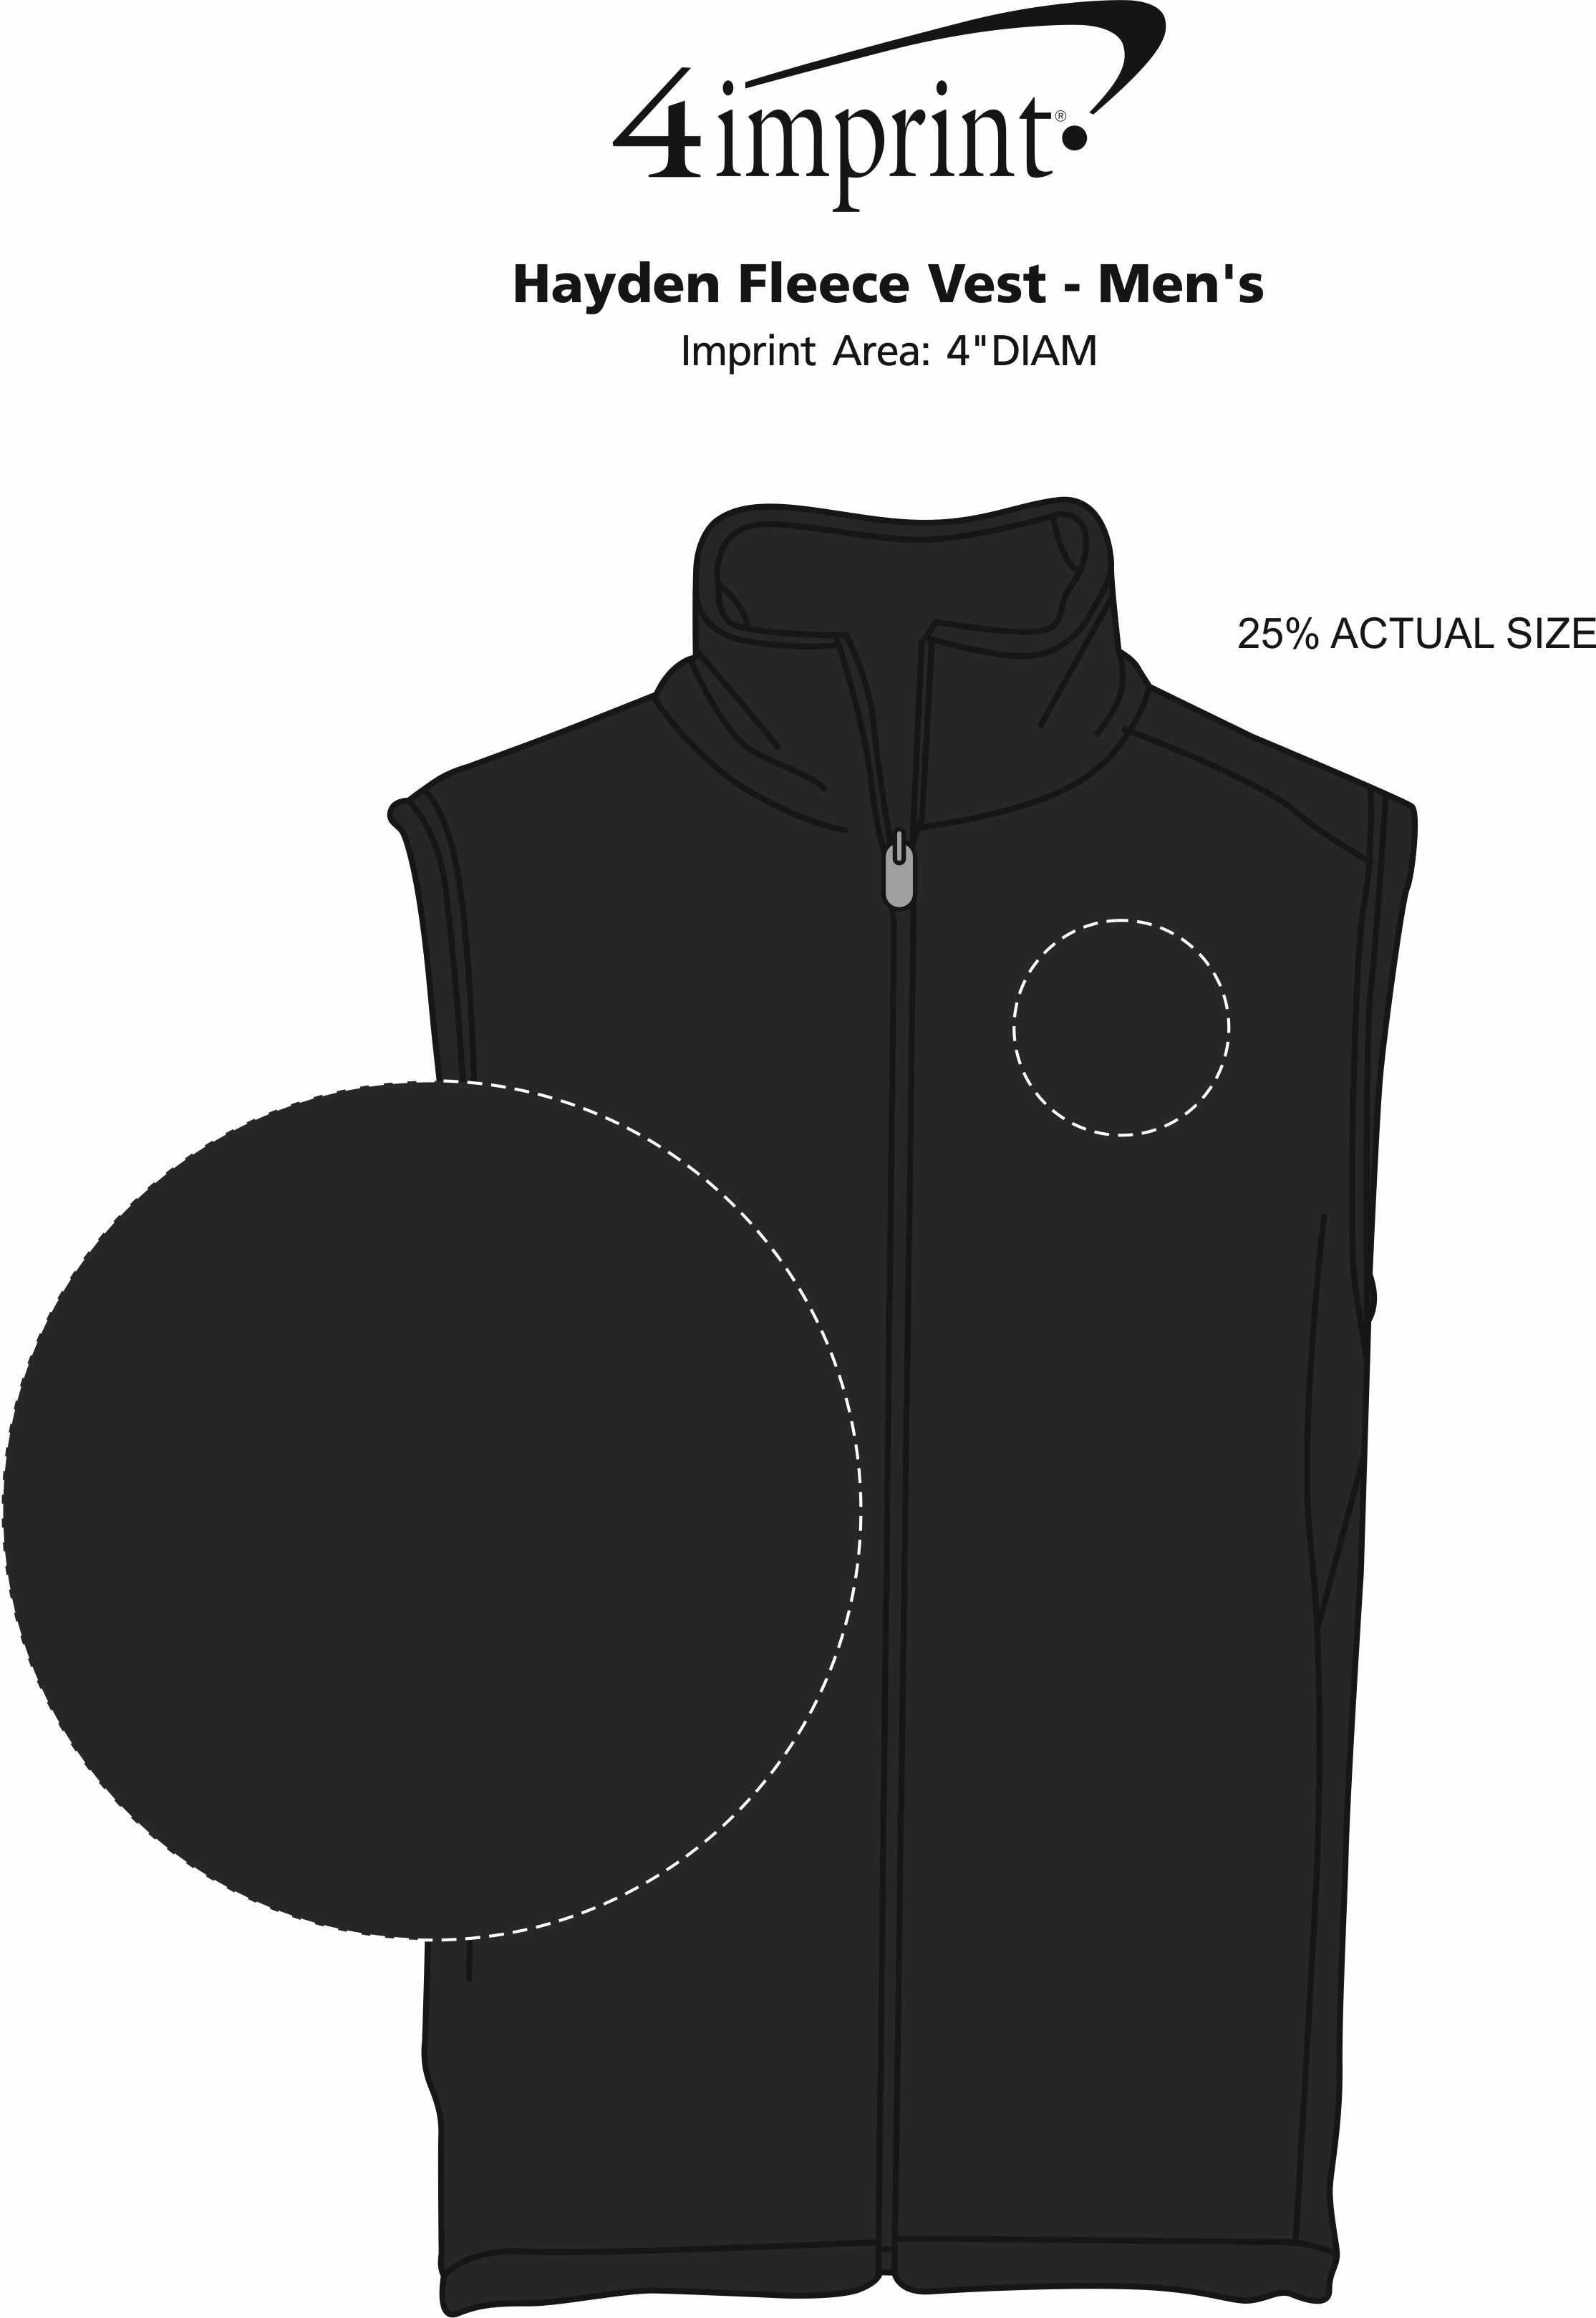 Imprint Area of Hayden Fleece Vest - Men's